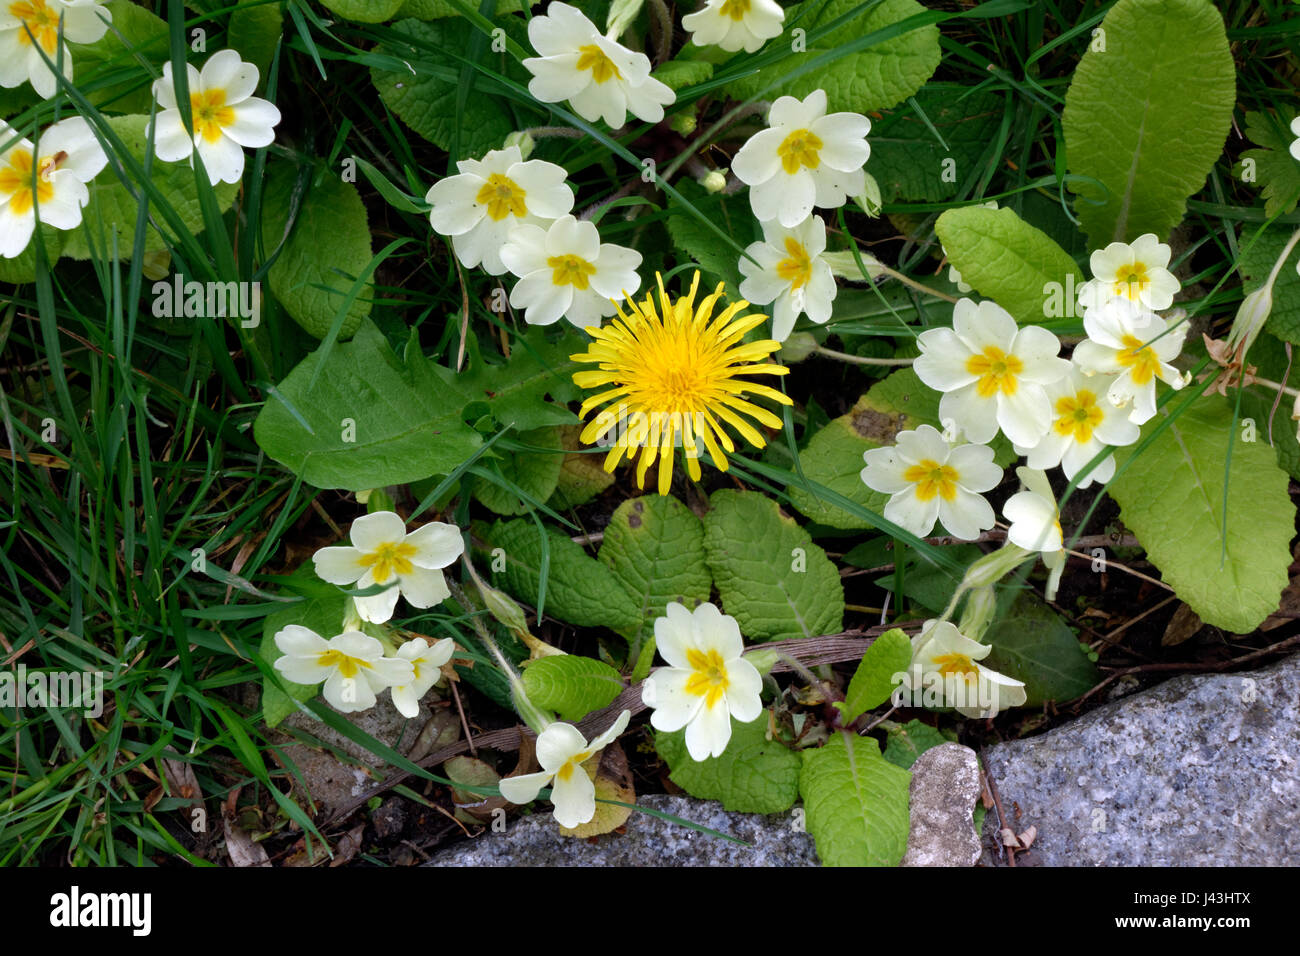 Primrose and Dandelion, Primula vulgaris and Taraxacum. Stock Photo